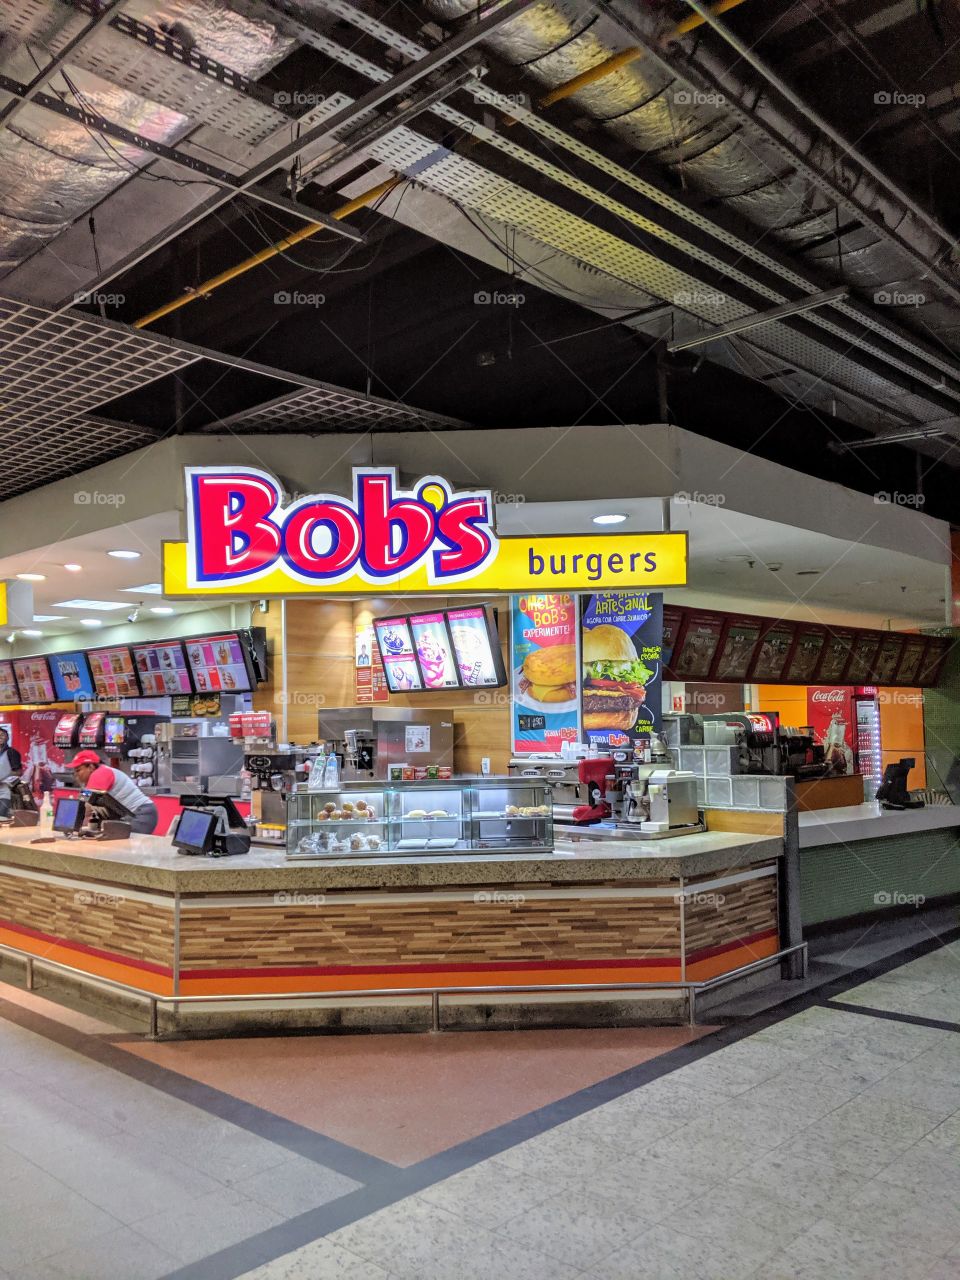 Bob's burgers at the airport